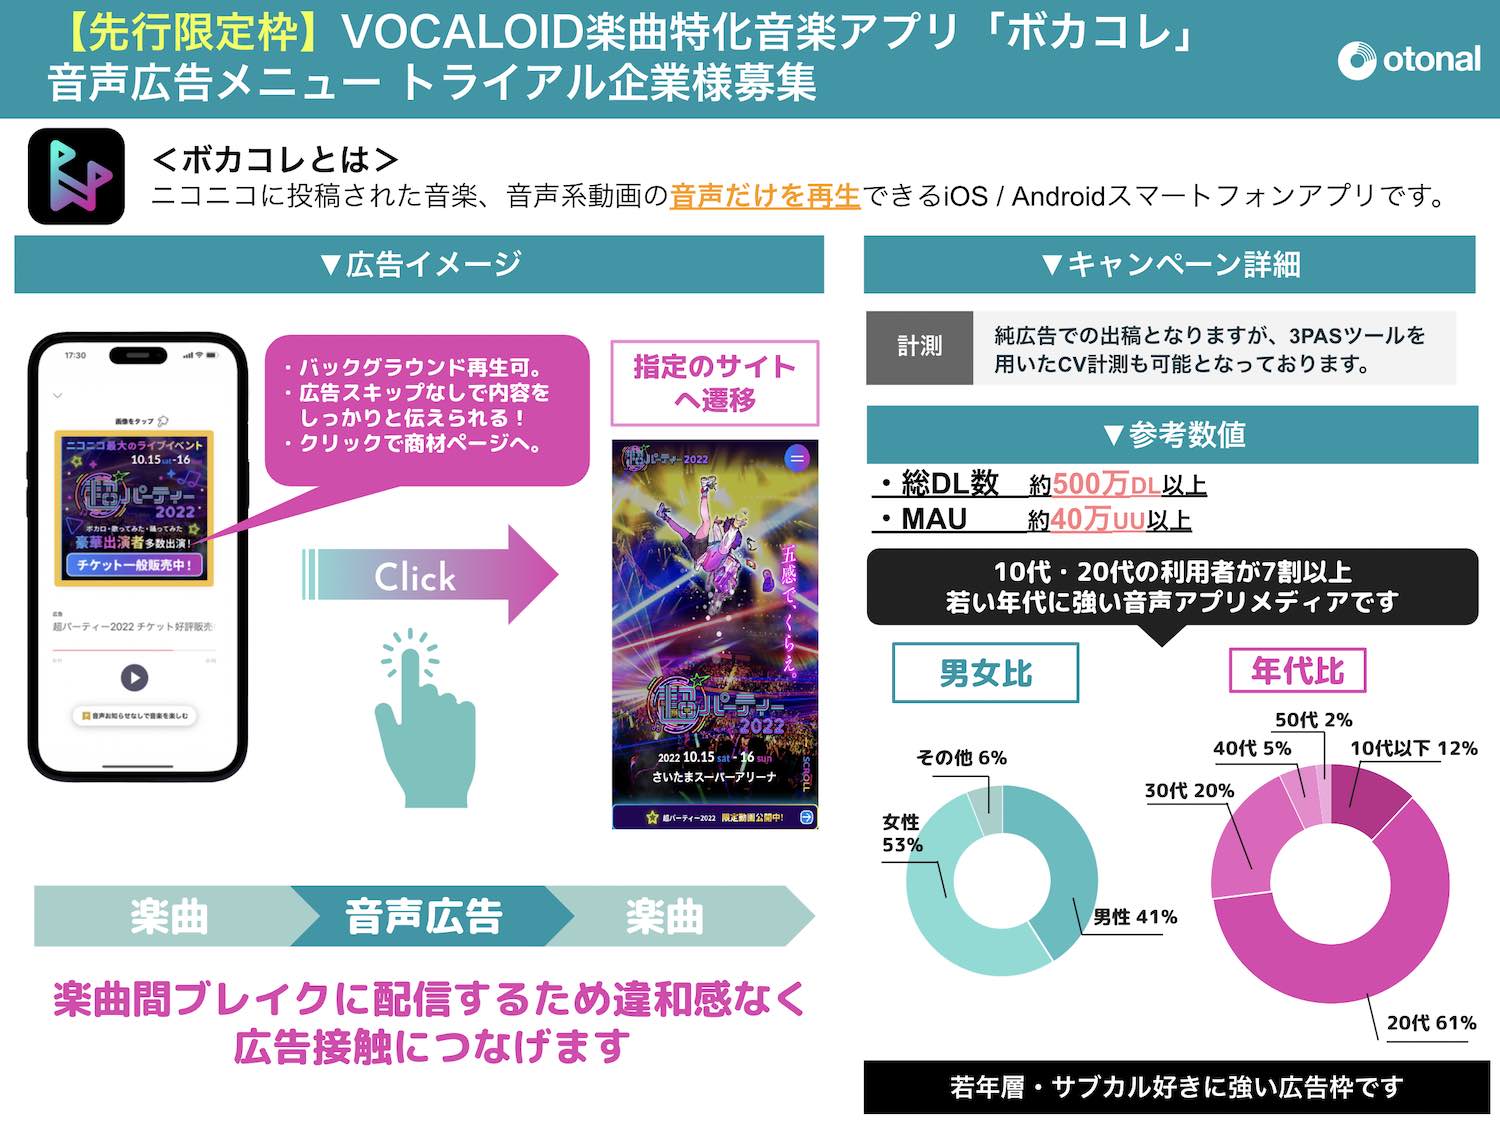 【媒体資料】ボーカロイド楽曲に特化した音楽アプリ「ボカコレ」音声広告プラン／資料DL